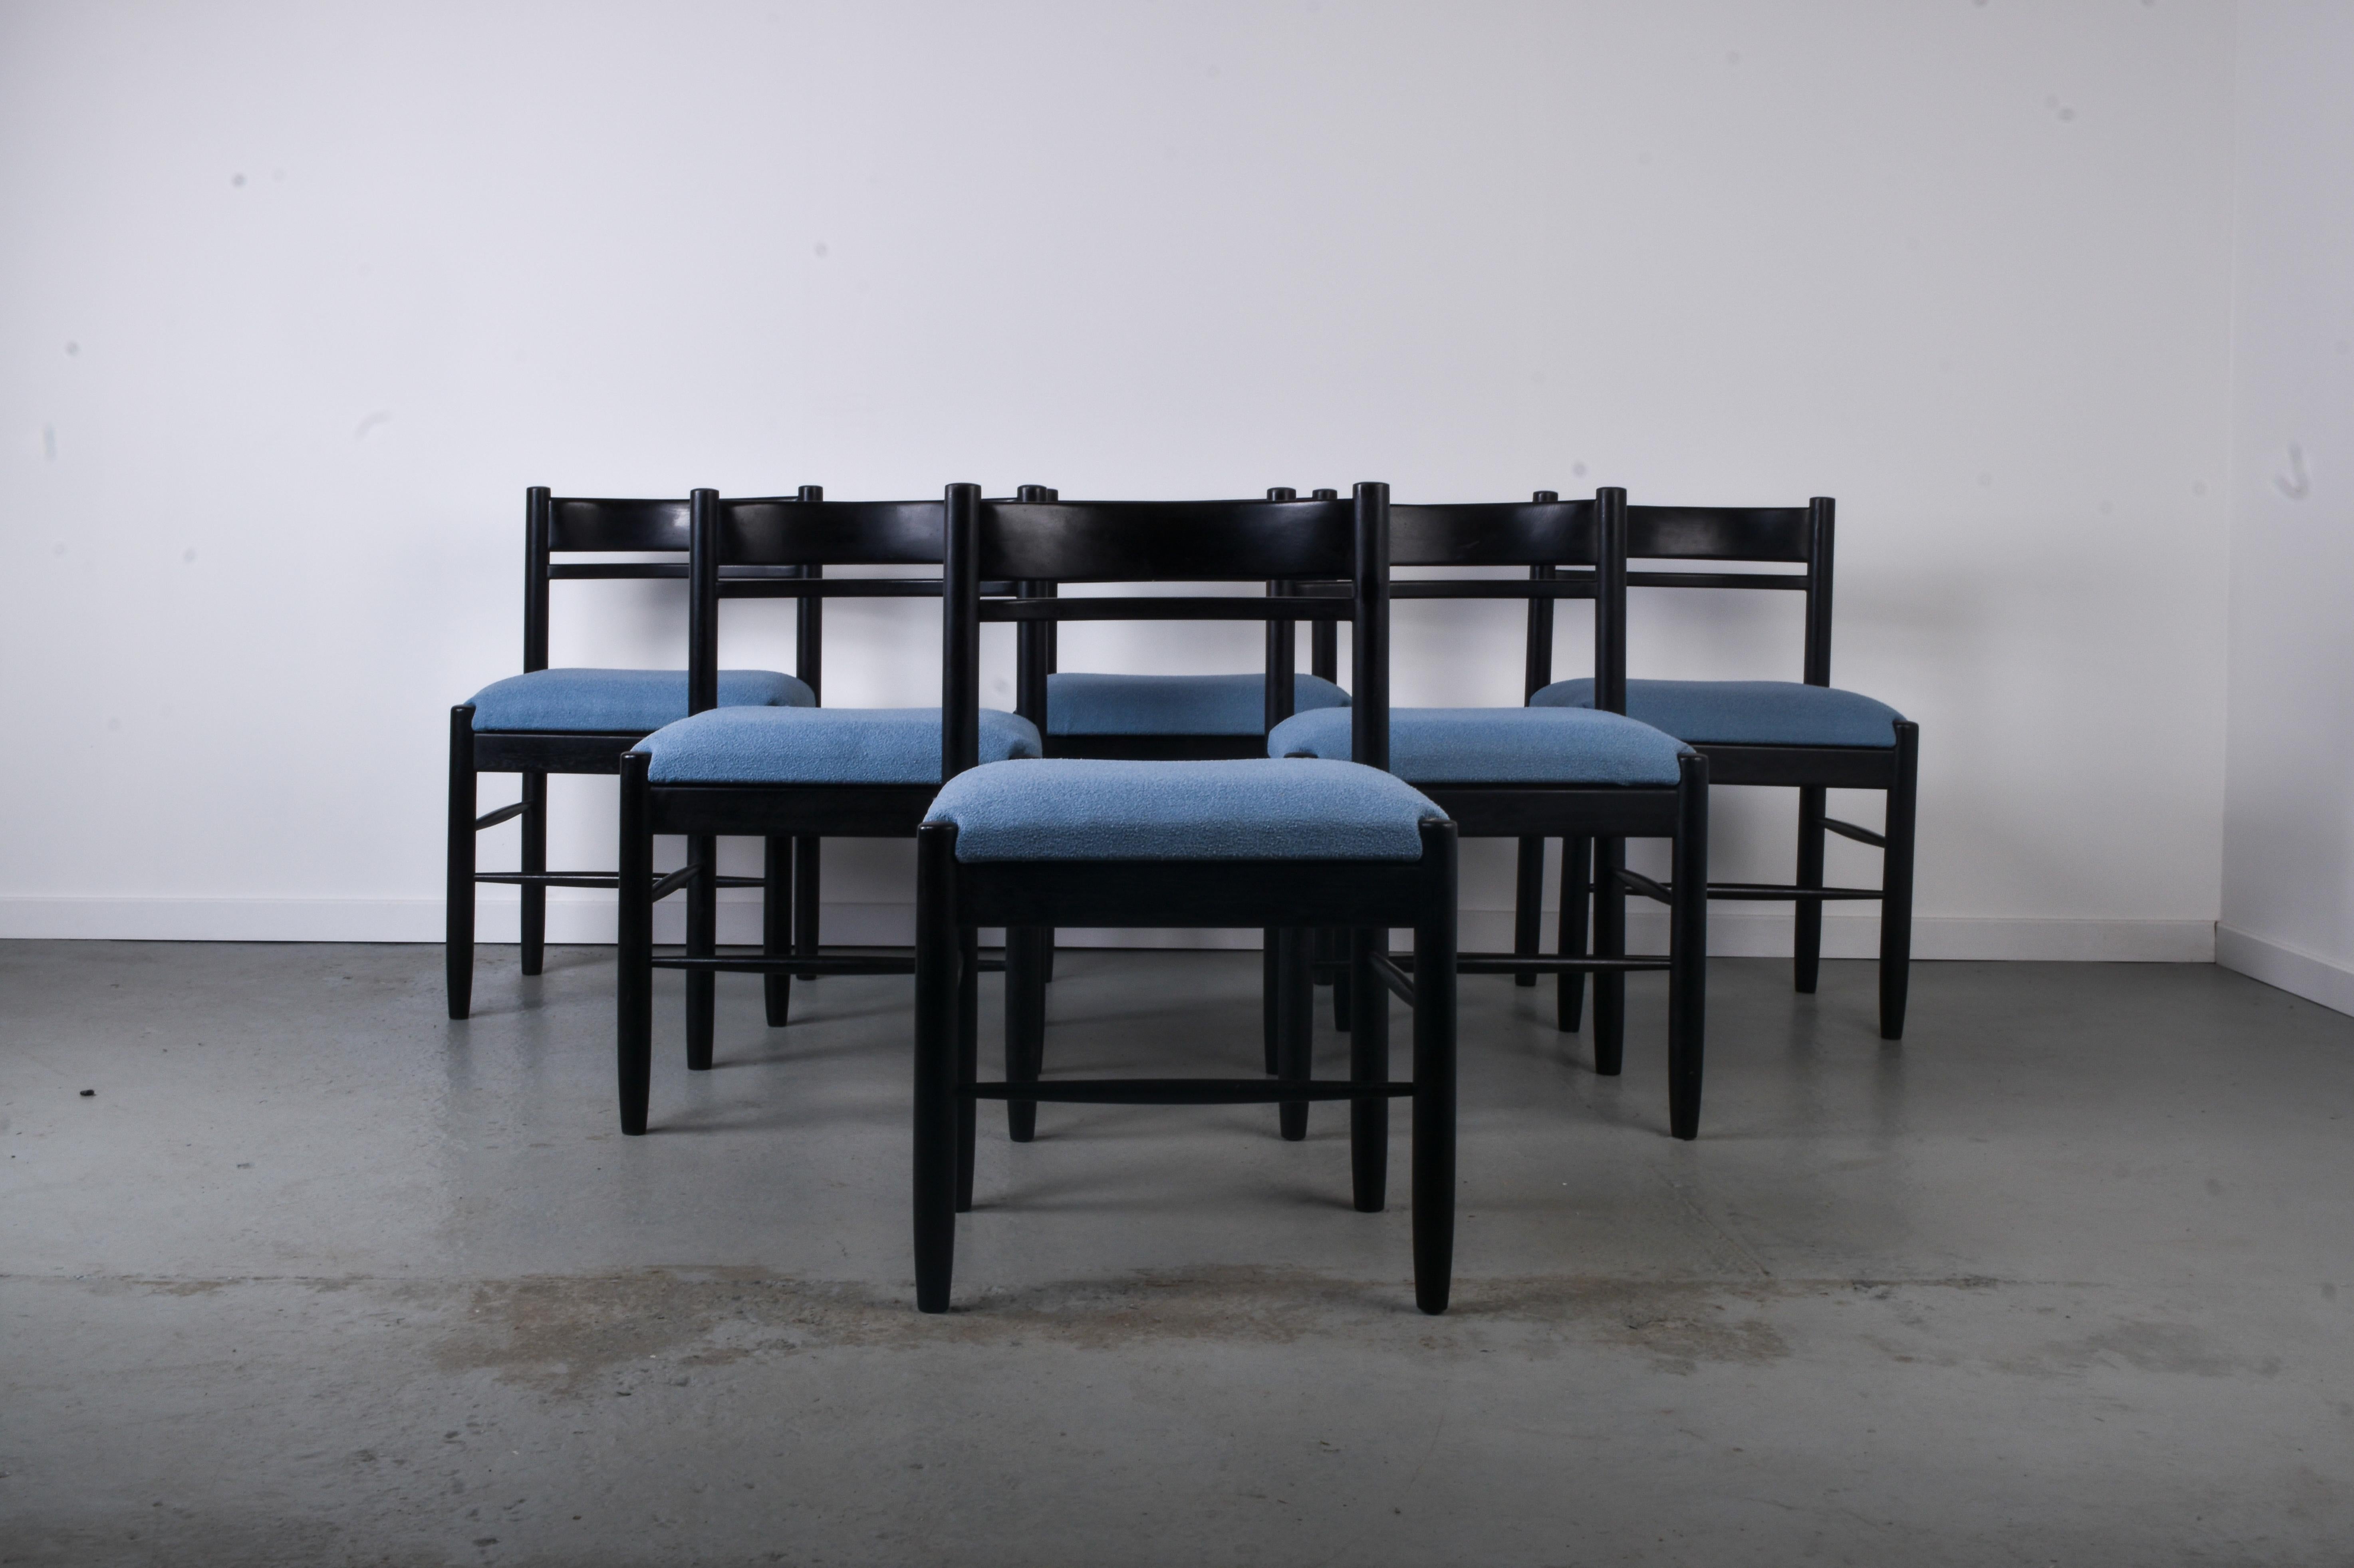 Satz von 6 Esszimmerstühlen aus schwarzer Eiche aus den 1970er Jahren. Der Sitz wurde mit einem hellblauen Bouclé-Stoff neu gepolstert.

Die Sitze sind neu gepolstert, die Rahmen sind in gutem Zustand, weisen aber einige Gebrauchsspuren auf.
Die